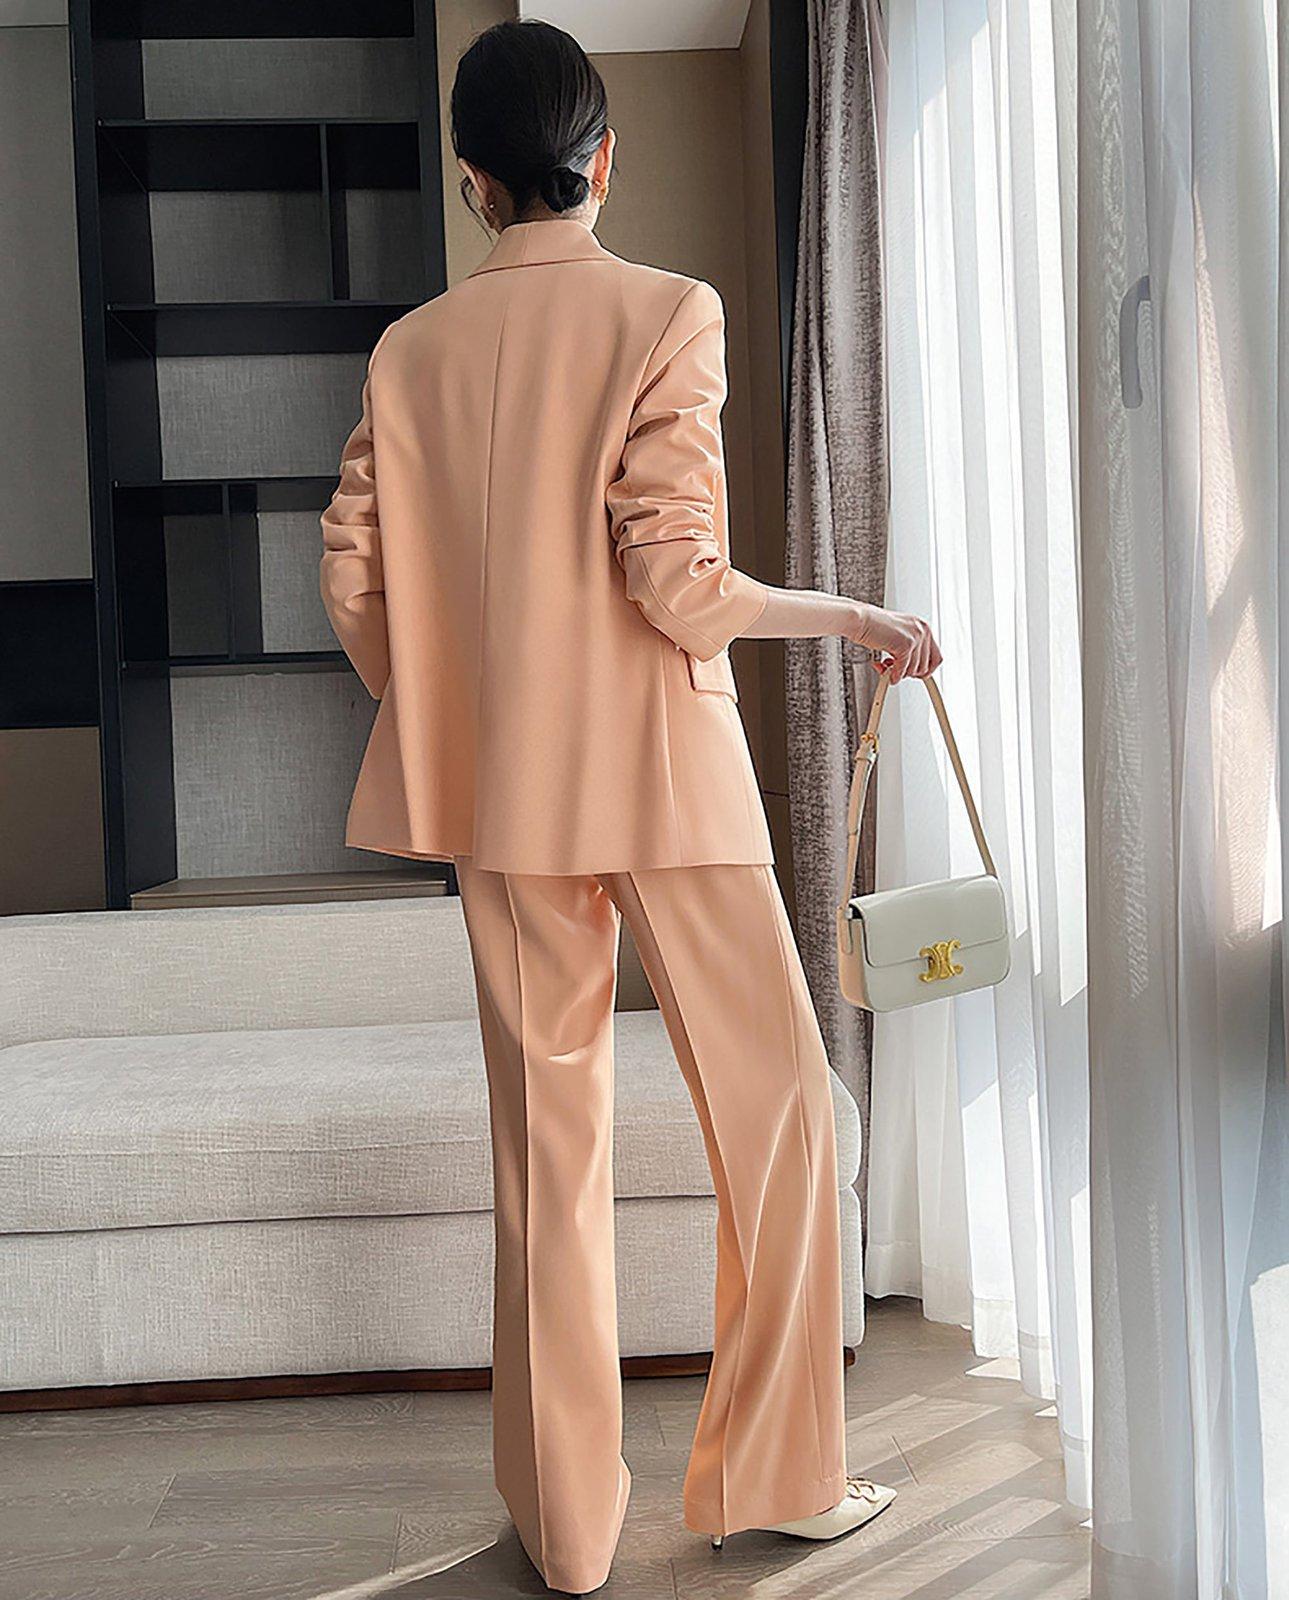 Khaki Brown 2-tone 2-piece Pants Suits, Ladies' 2 Piece Pants and Blazer  Suit Set, Women's Coats, Formal Office Suits, Wedding Suits 